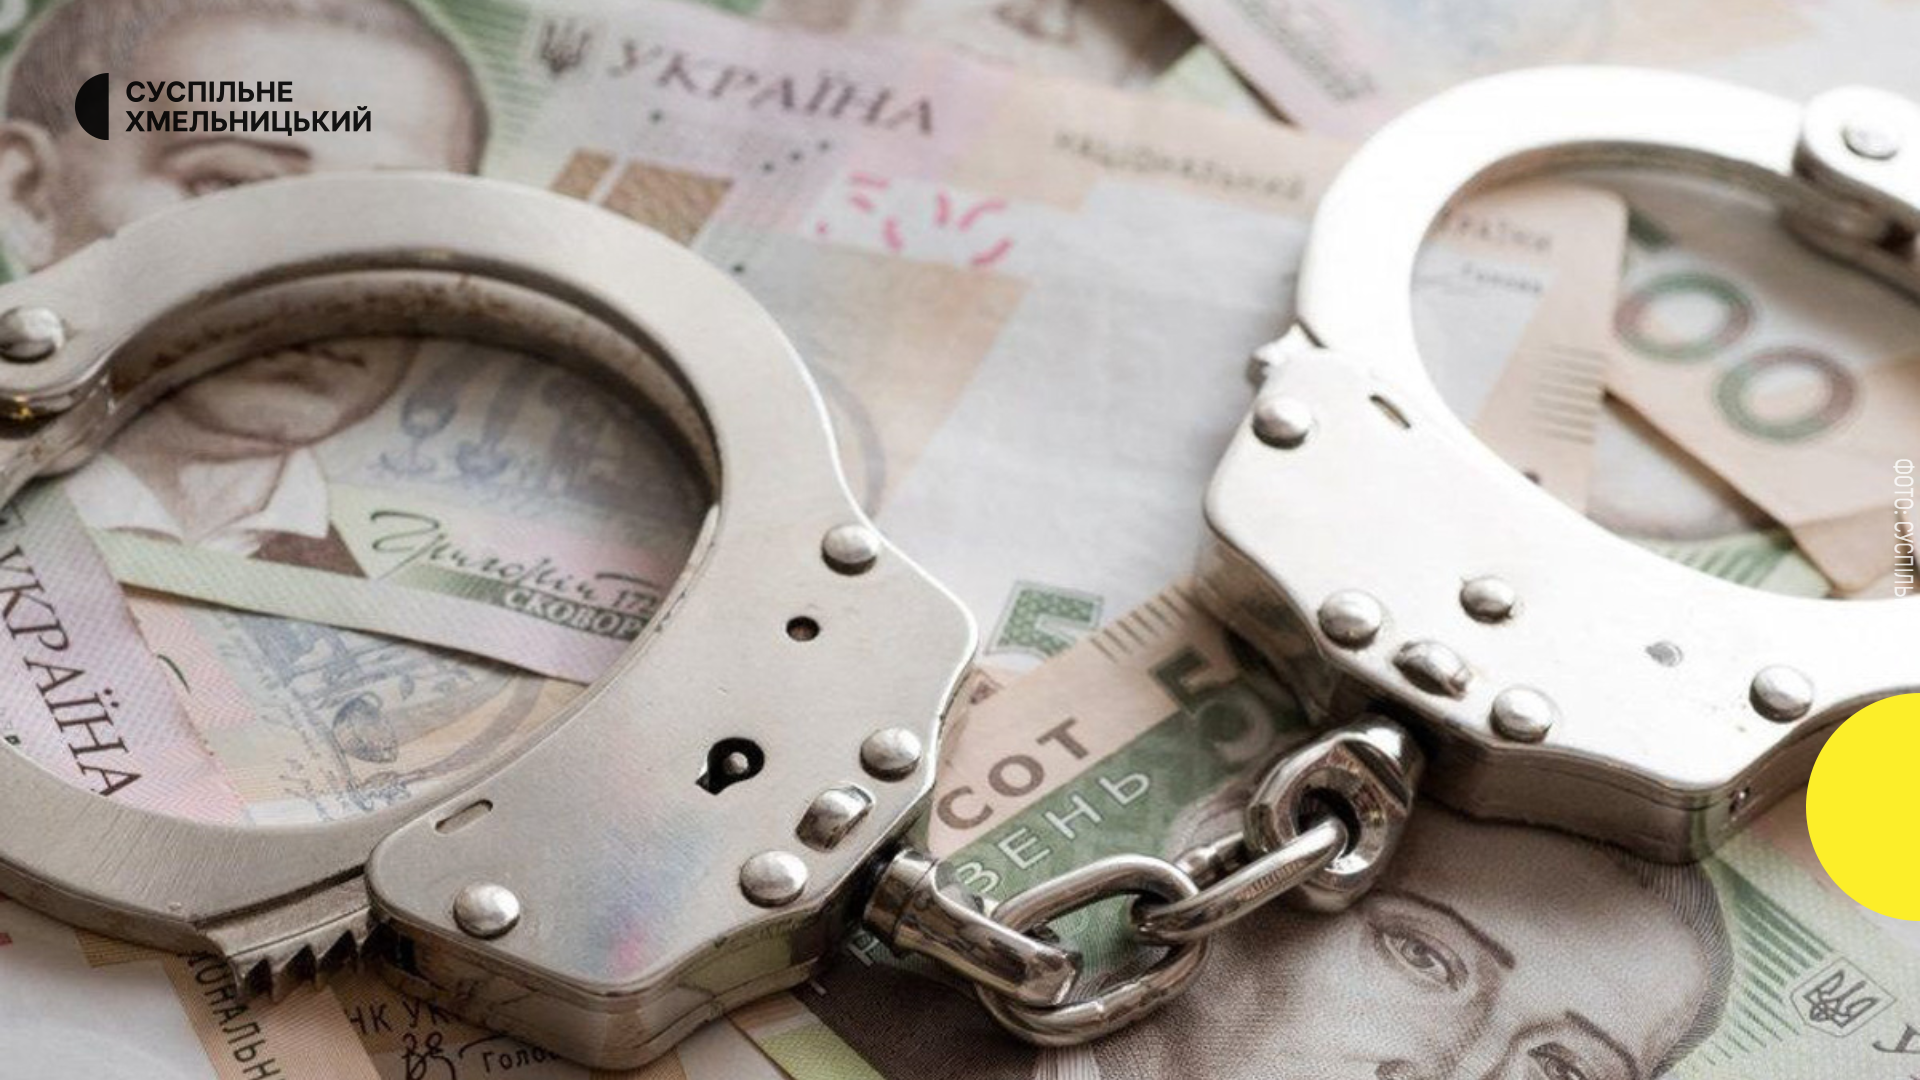 Домашнього насильника з Хмельницького оштрафували на 17 тис. грн за хабар поліції